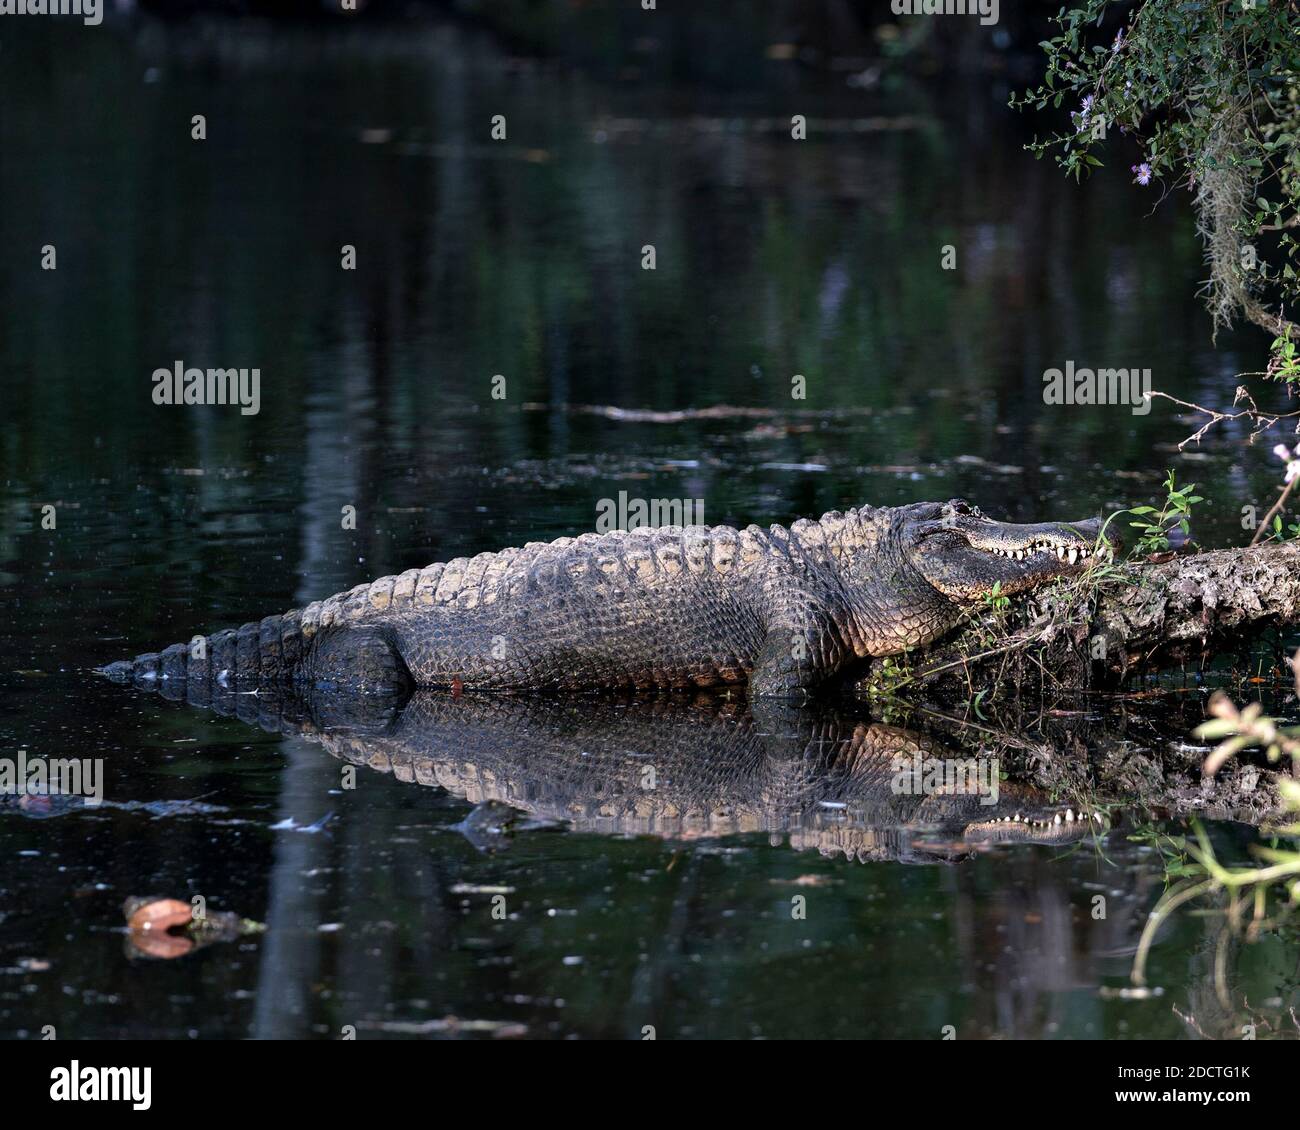 Alligatore poggiato su un tronco dall'acqua con un riflesso che espone il suo corpo, i denti, la testa, la coda, i piedi, nel suo habitat e ambiente. Stock di alligatore Foto Stock